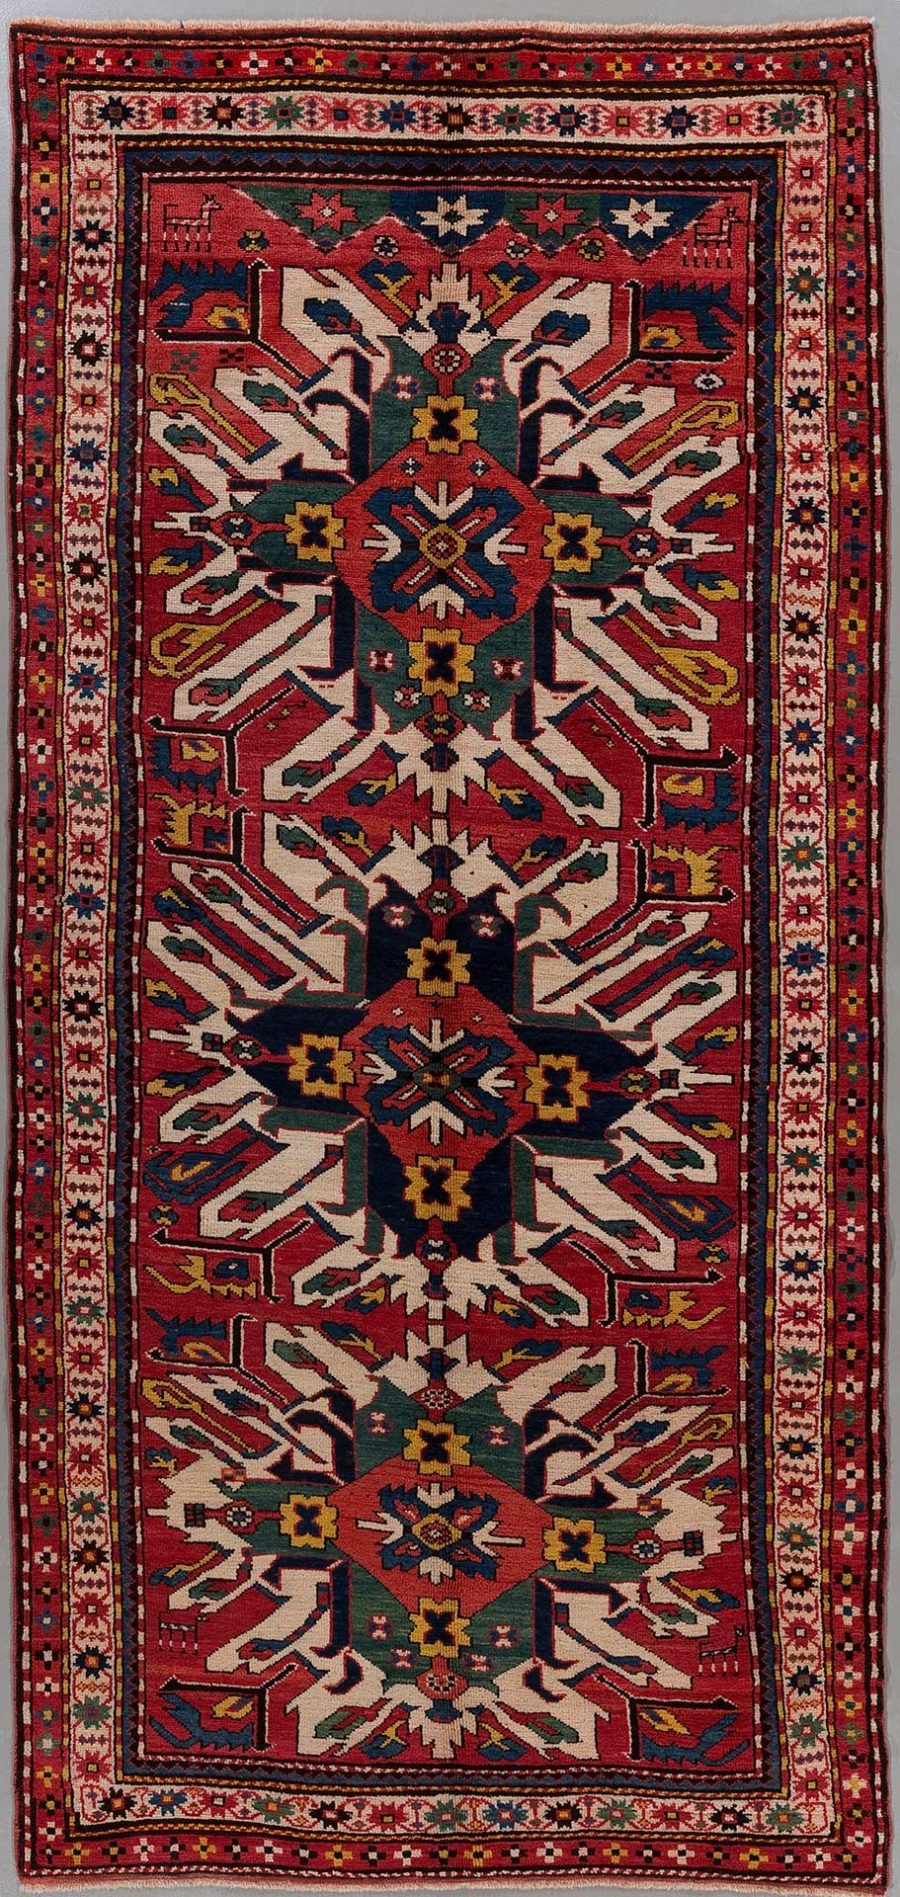 Handgeknüpfter orientalischer Teppich mit komplexem geometrischem Muster und mehreren Bordüren in Rot-, Blau-, Grün- und Cremetönen.